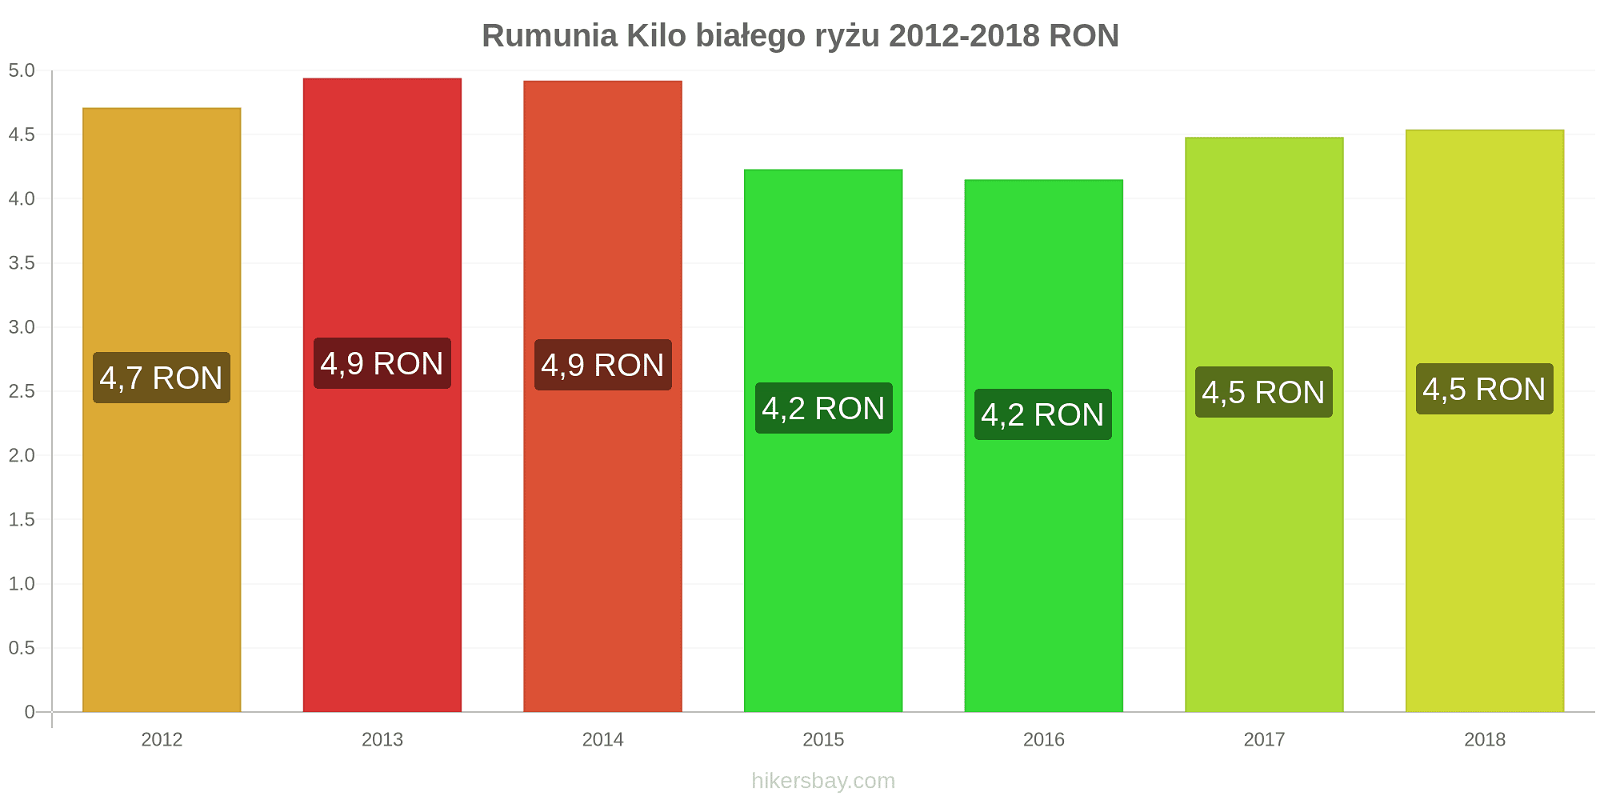 Rumunia zmiany cen Kilo białego ryżu hikersbay.com